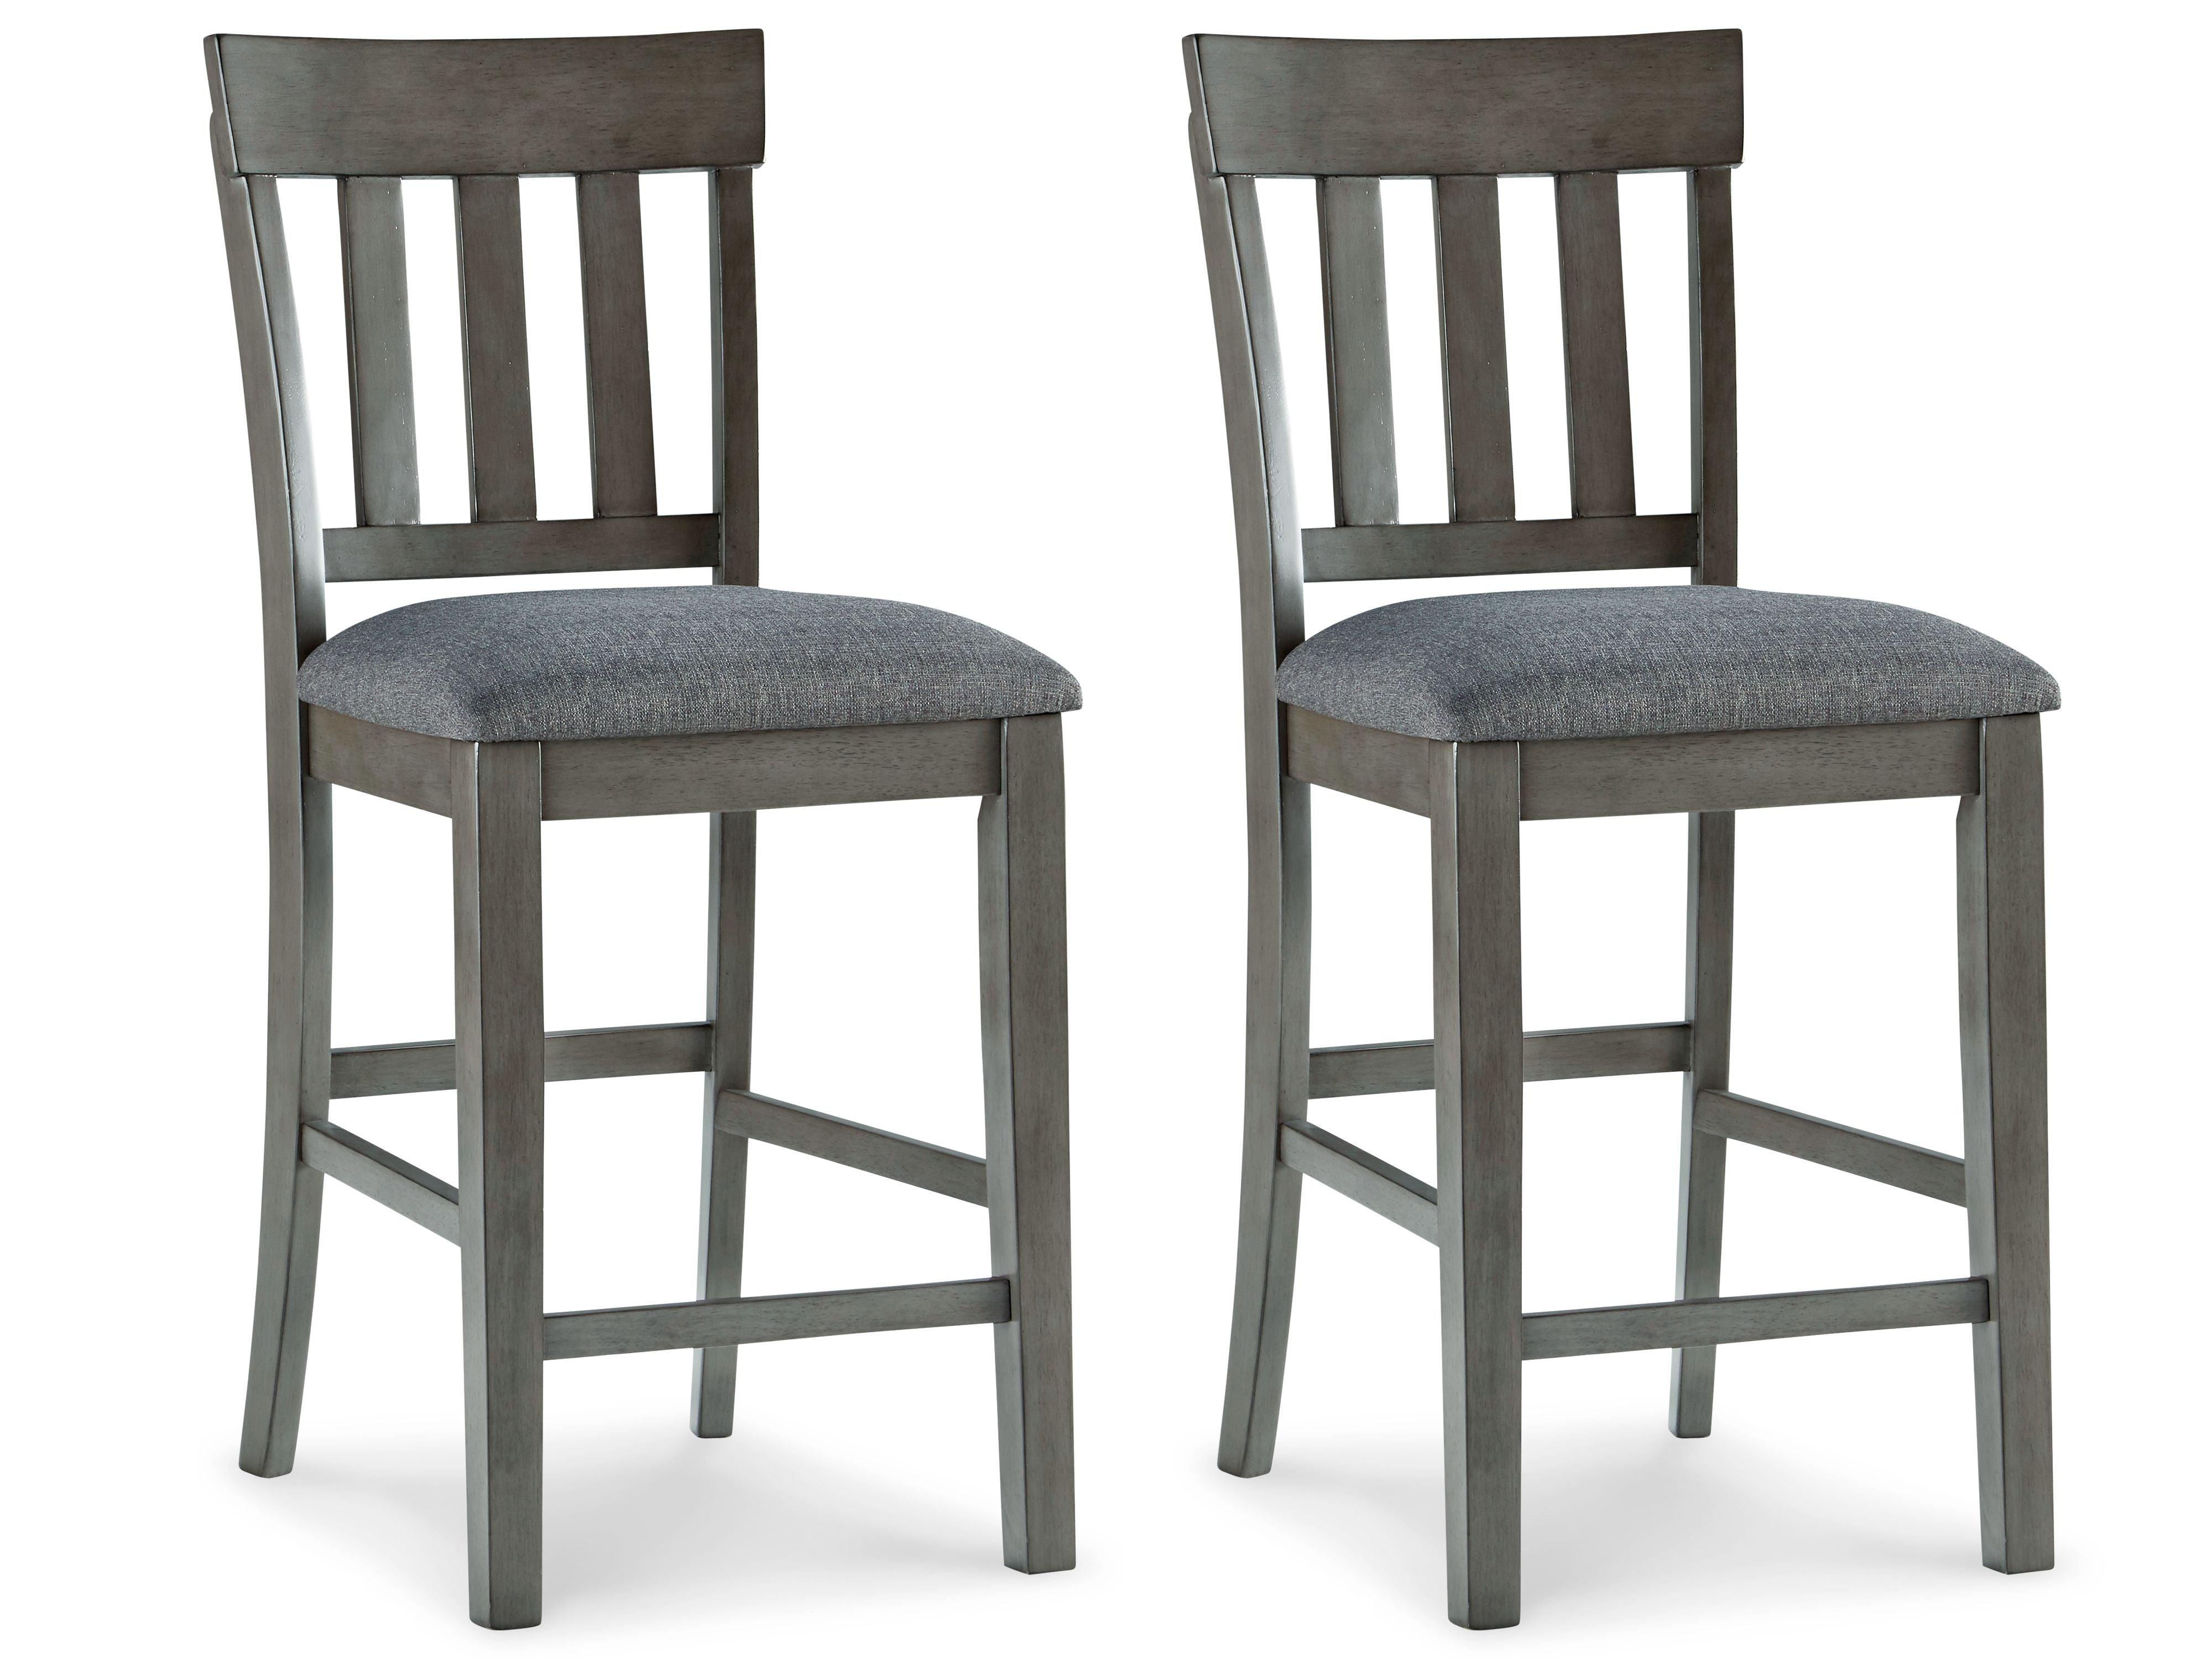 Ashley Furniture - Hallanden - Black / Gray - Upholstered Barstool (Set of 2) - 5th Avenue Furniture